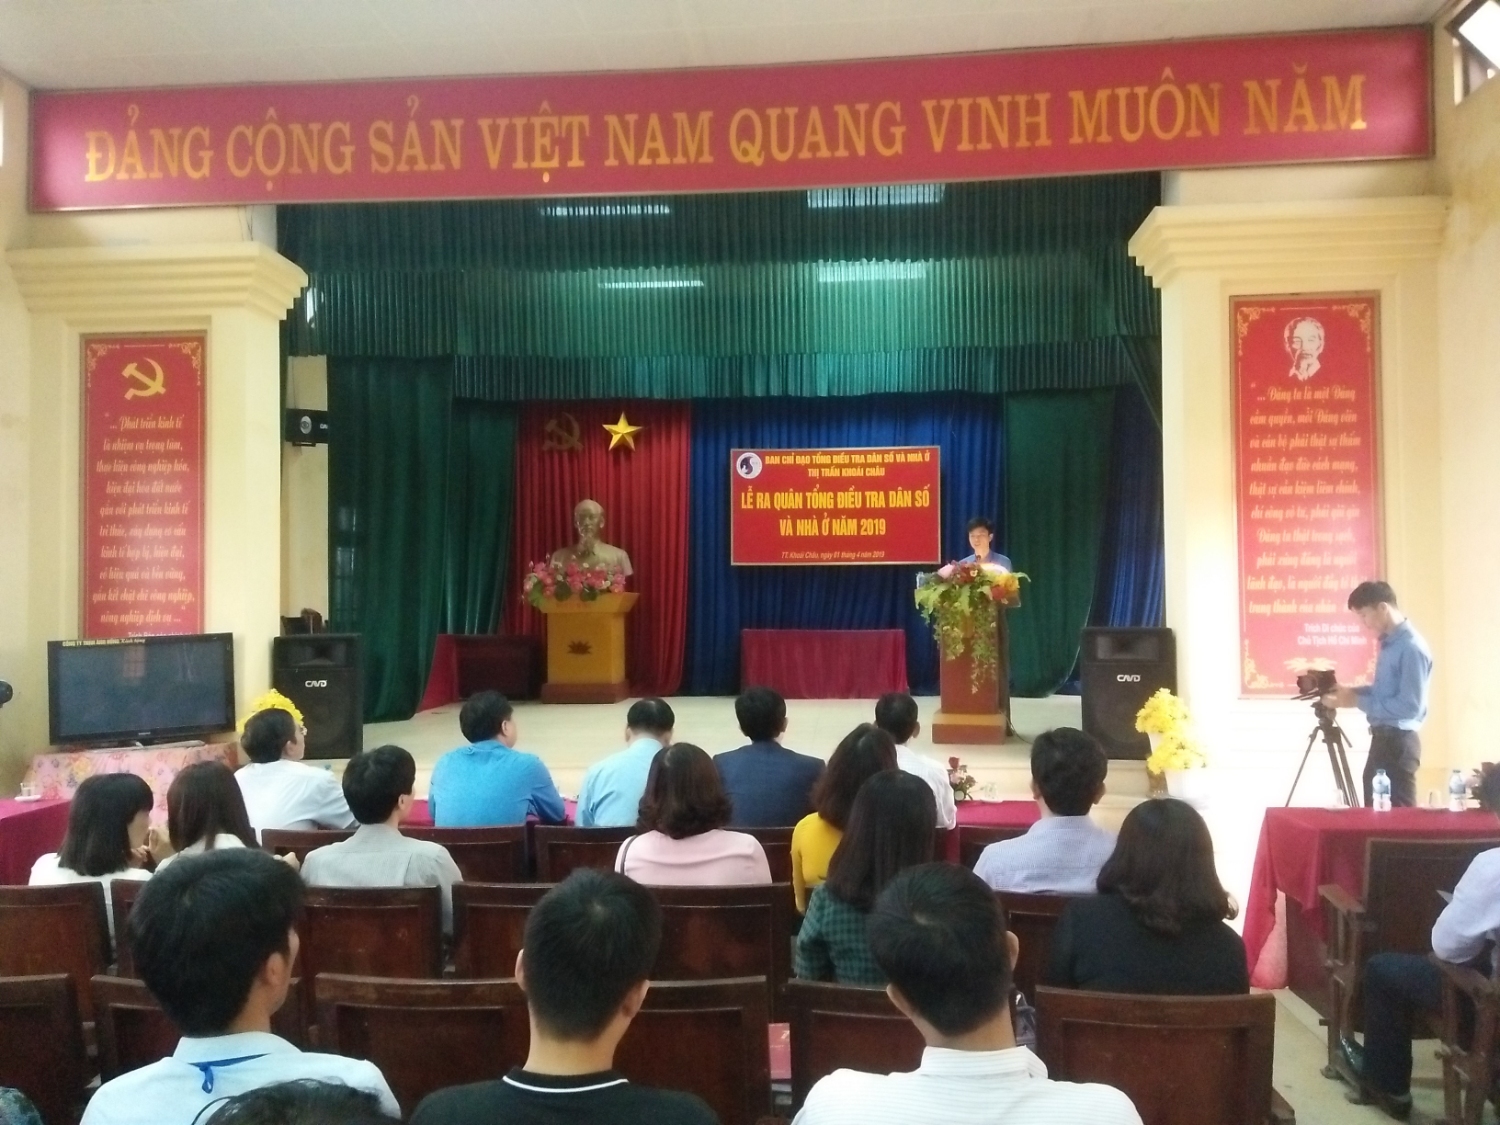 Ông Nguyễn Duy Khanh – Phó chủ tịch UBND thị trấn Khoái Châu, Trưởng ban chỉ đạo Tổng điều tra dân số và nhà ở năm 2019 thị trấn báo cáo quá trình chuẩn bị cho Tổng điều tra trên địa bàn thị trấn